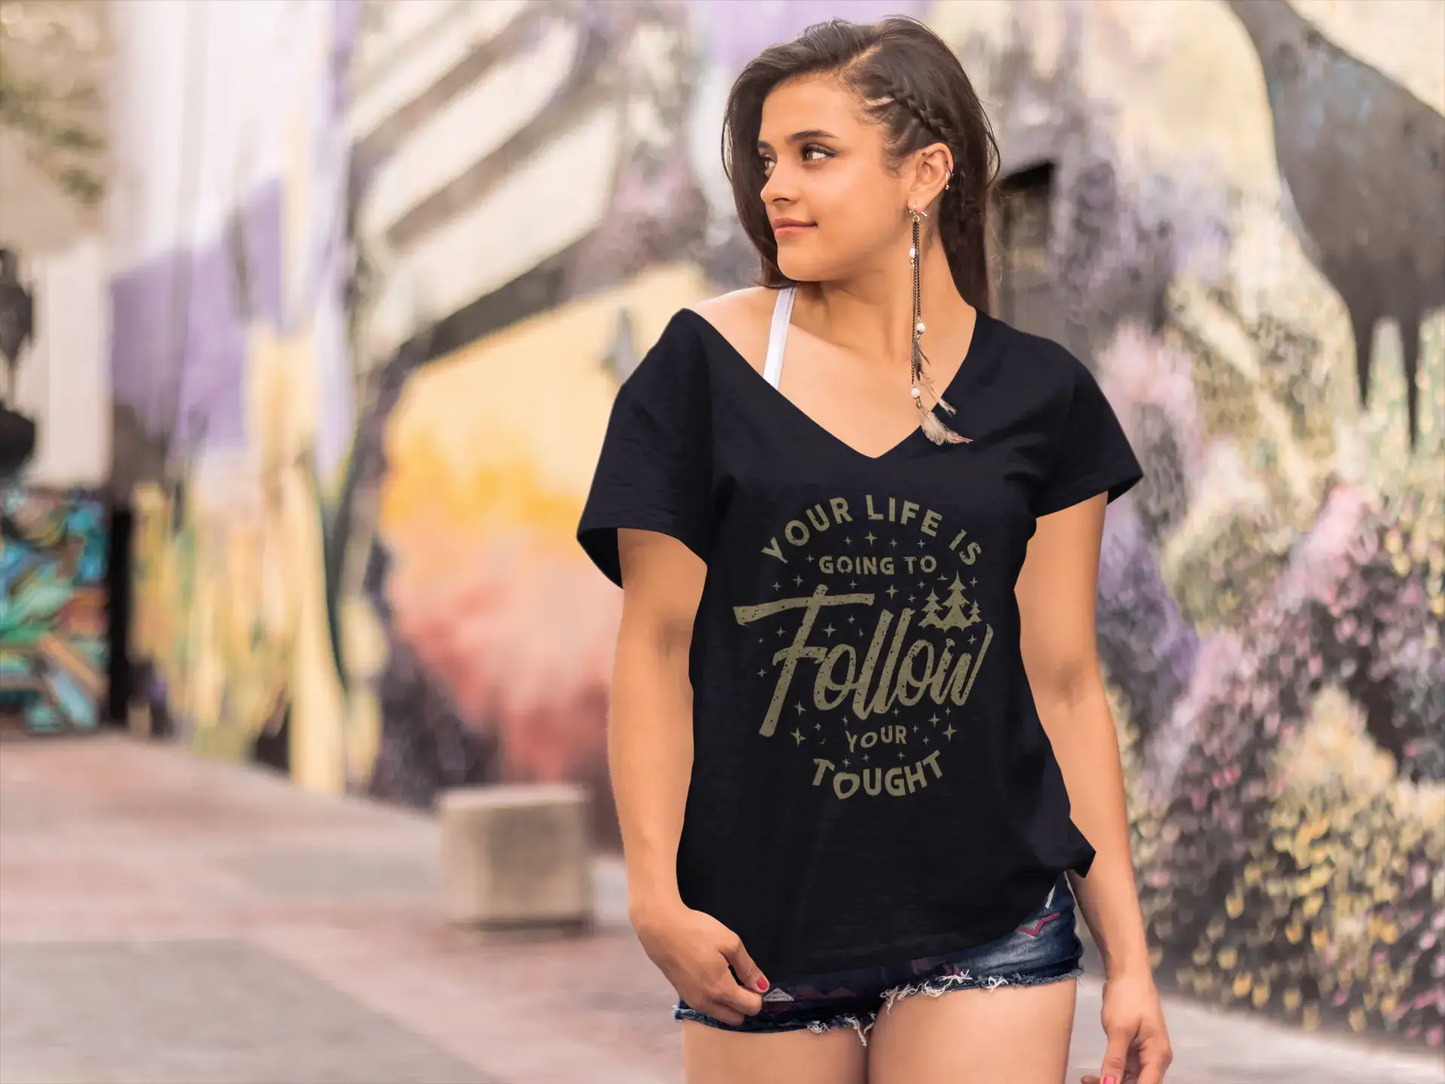 ULTRABASIC Women's T-Shirt Life is Going to Follow Tought - Motivational Shirt